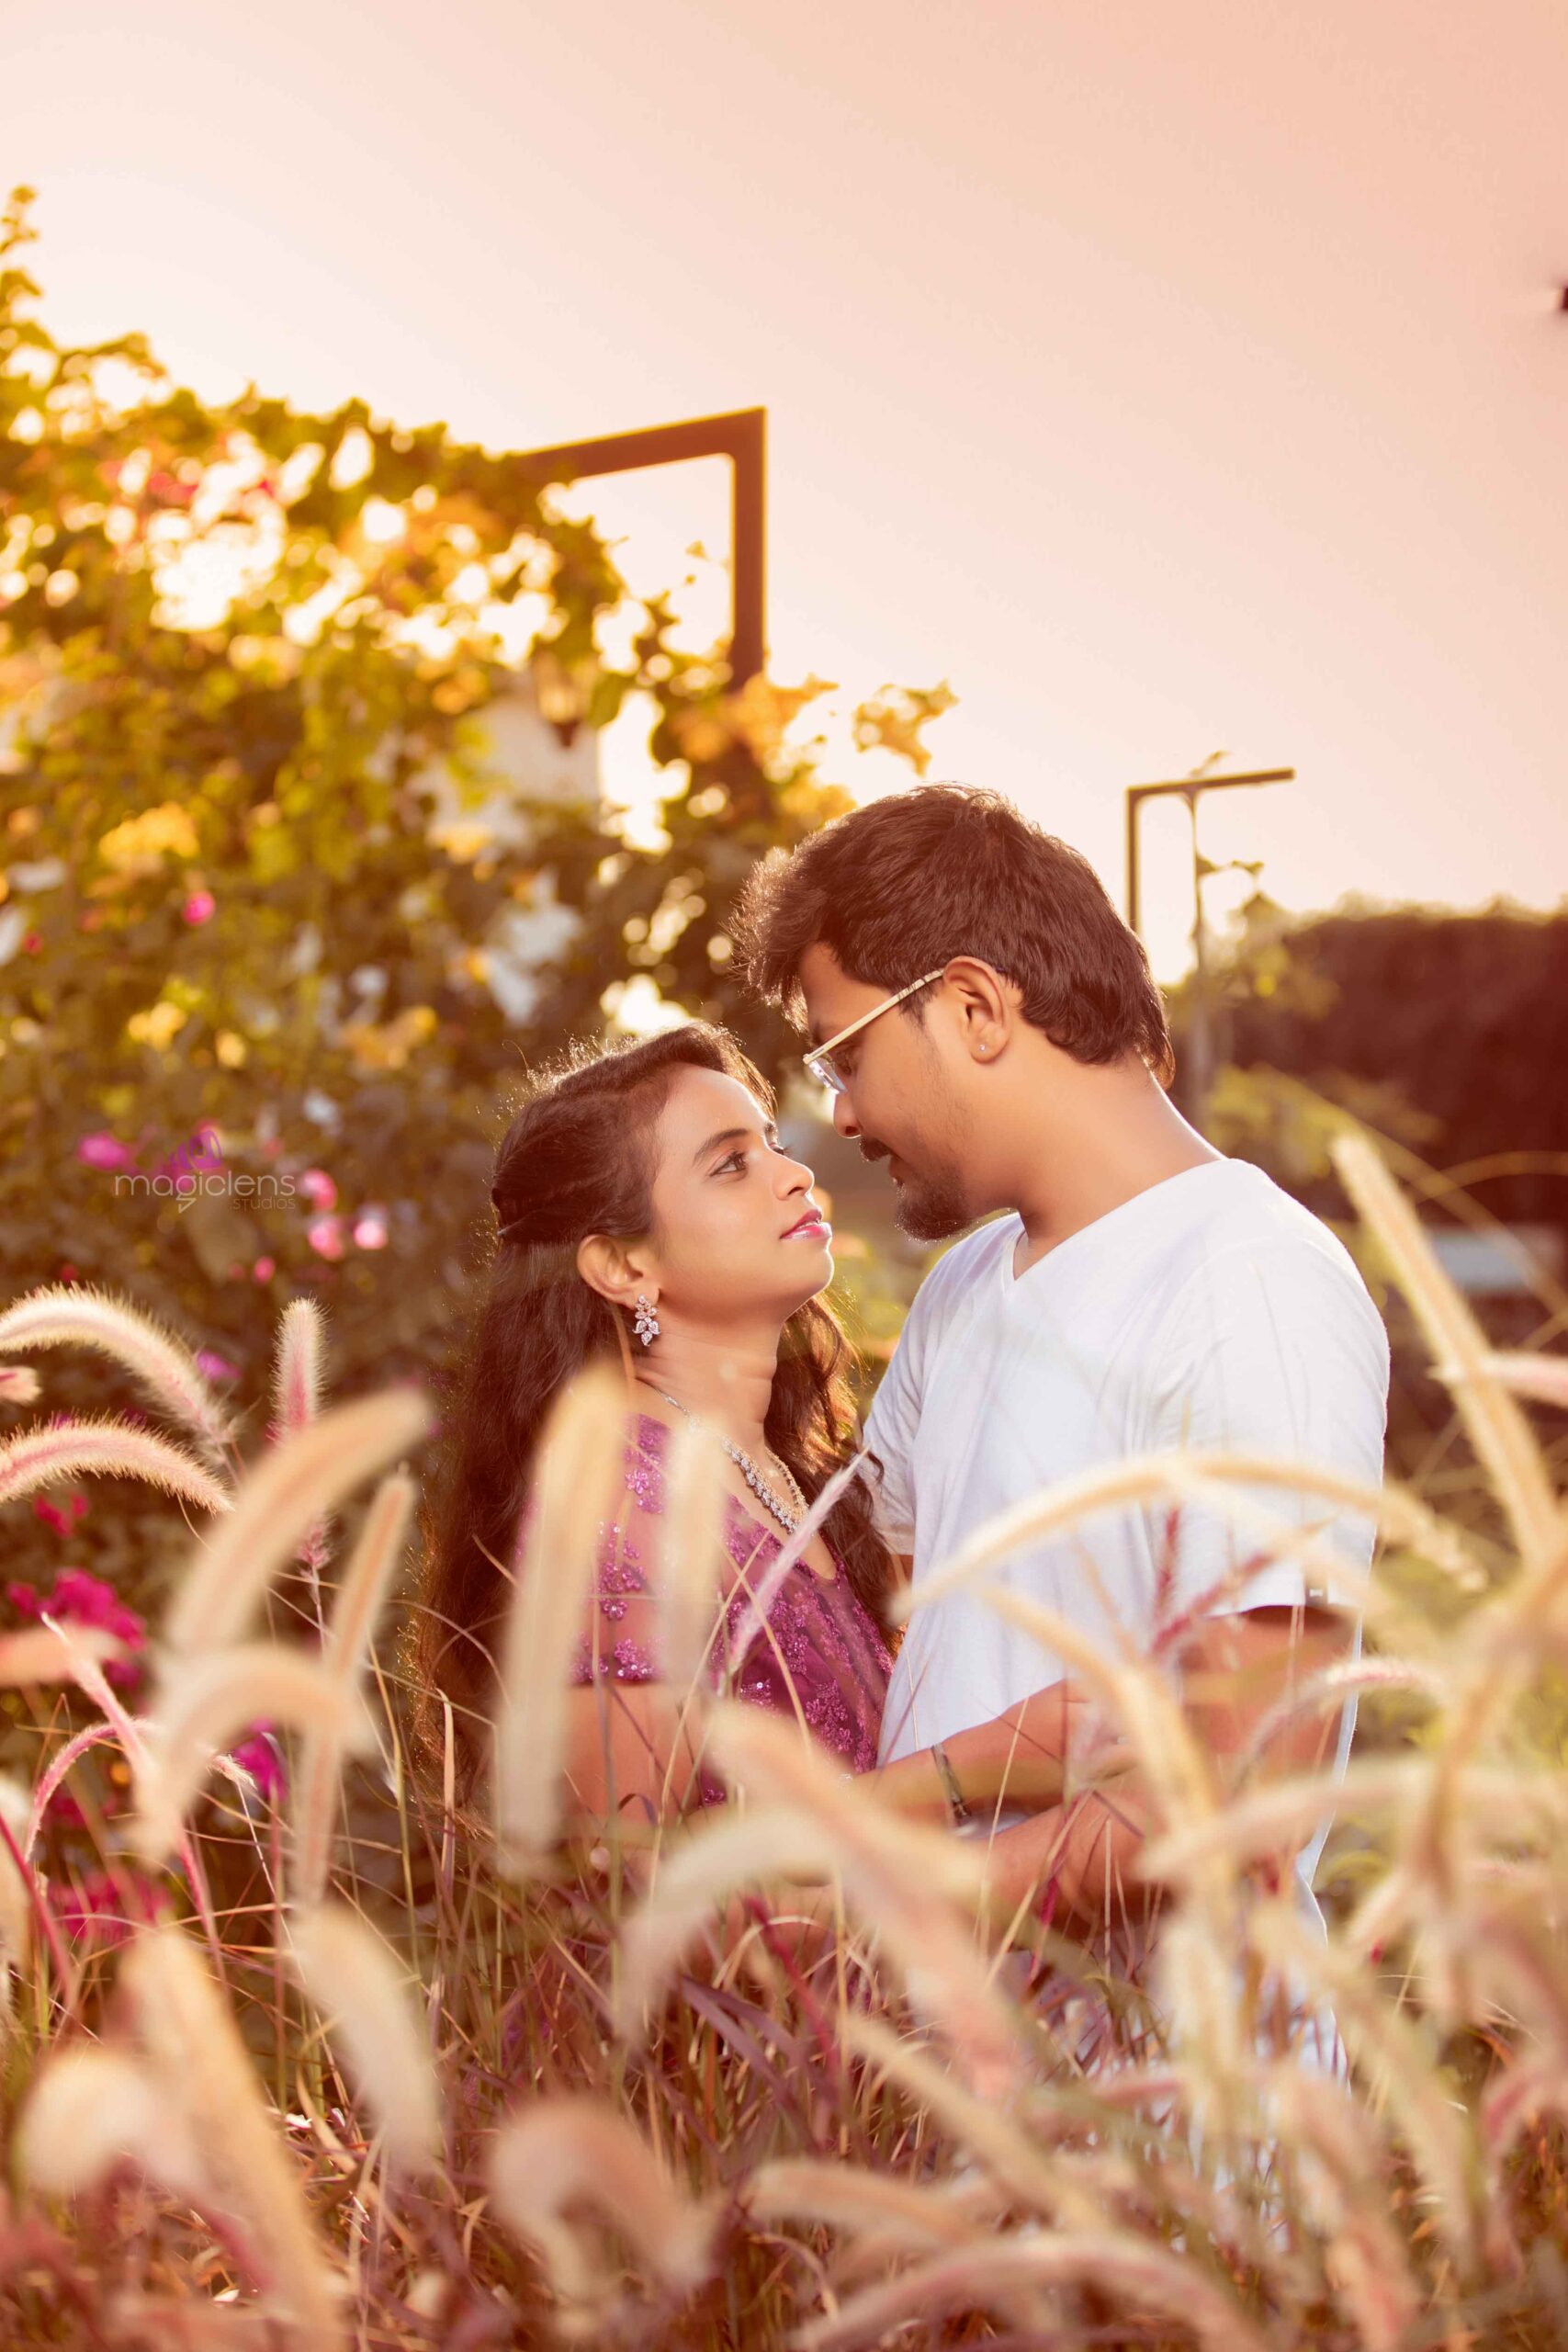 Bon Air Park Rose Garden Couples Photo Shoot